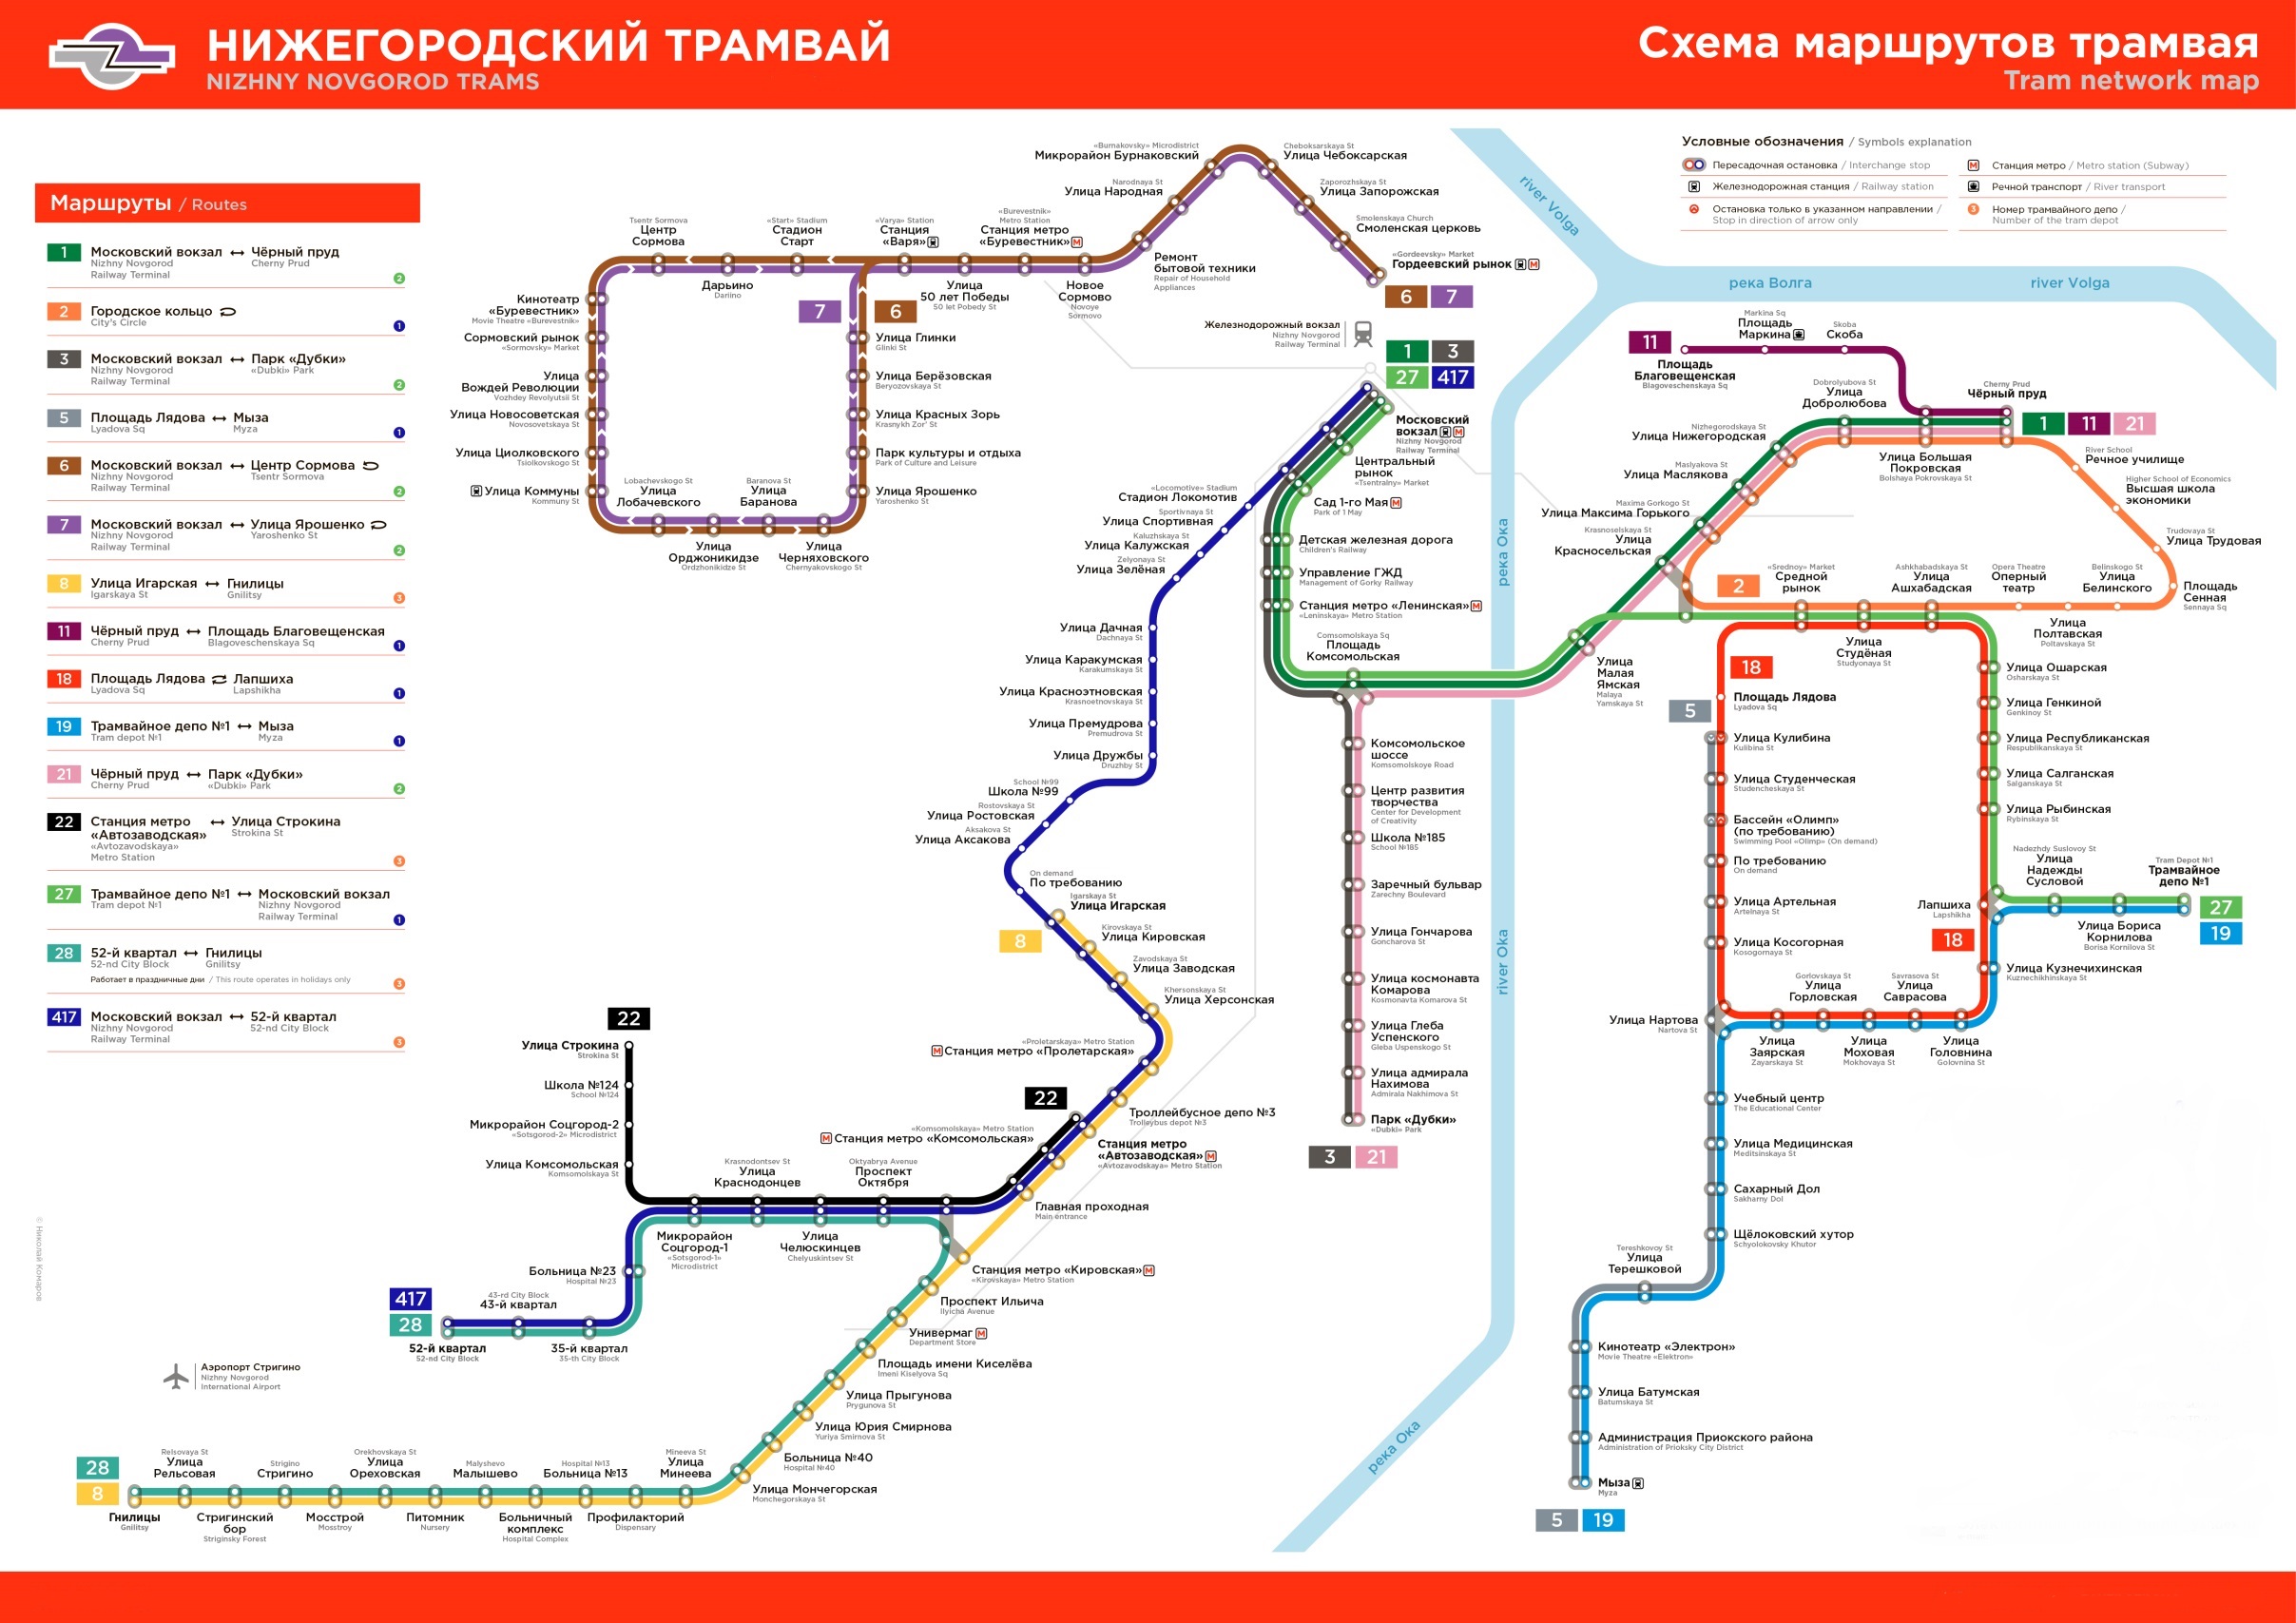 Карта Нижнего Новгорода (Россия) на русском языке, расположение на картемира с городами, метро, центра, районов и округов